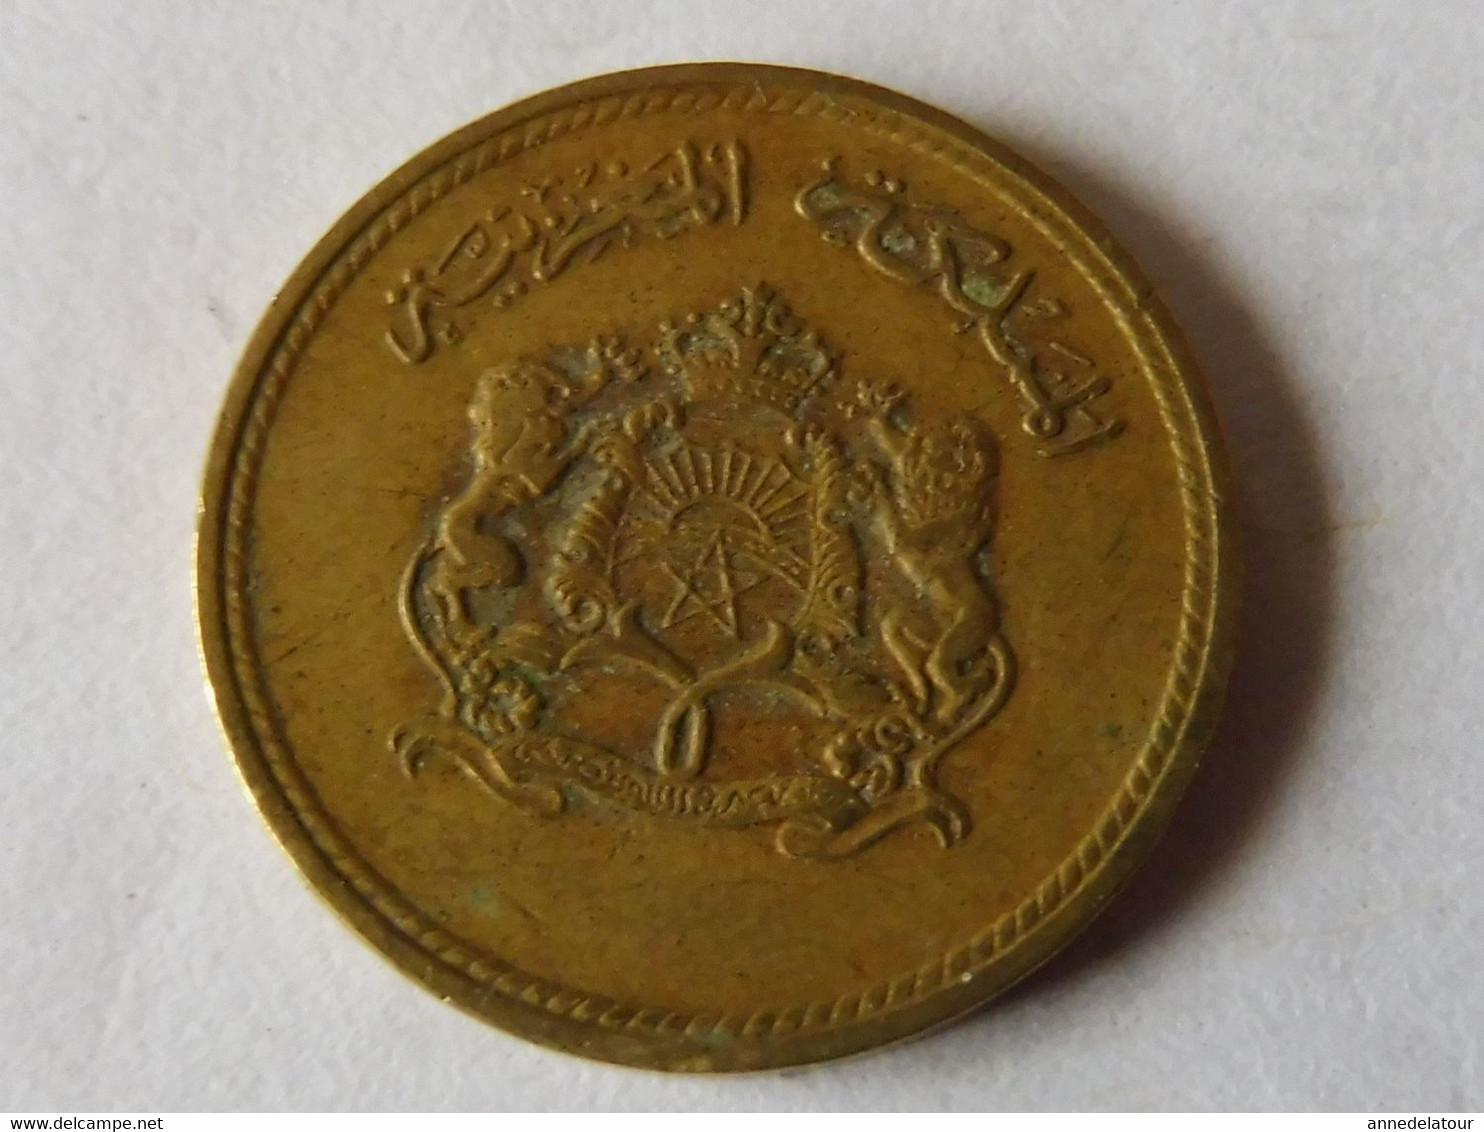 Pièce De Monnaie 1974 - 1394  (5 Centimes 1974 Du Royaume Du Maroc) - Origen Desconocido